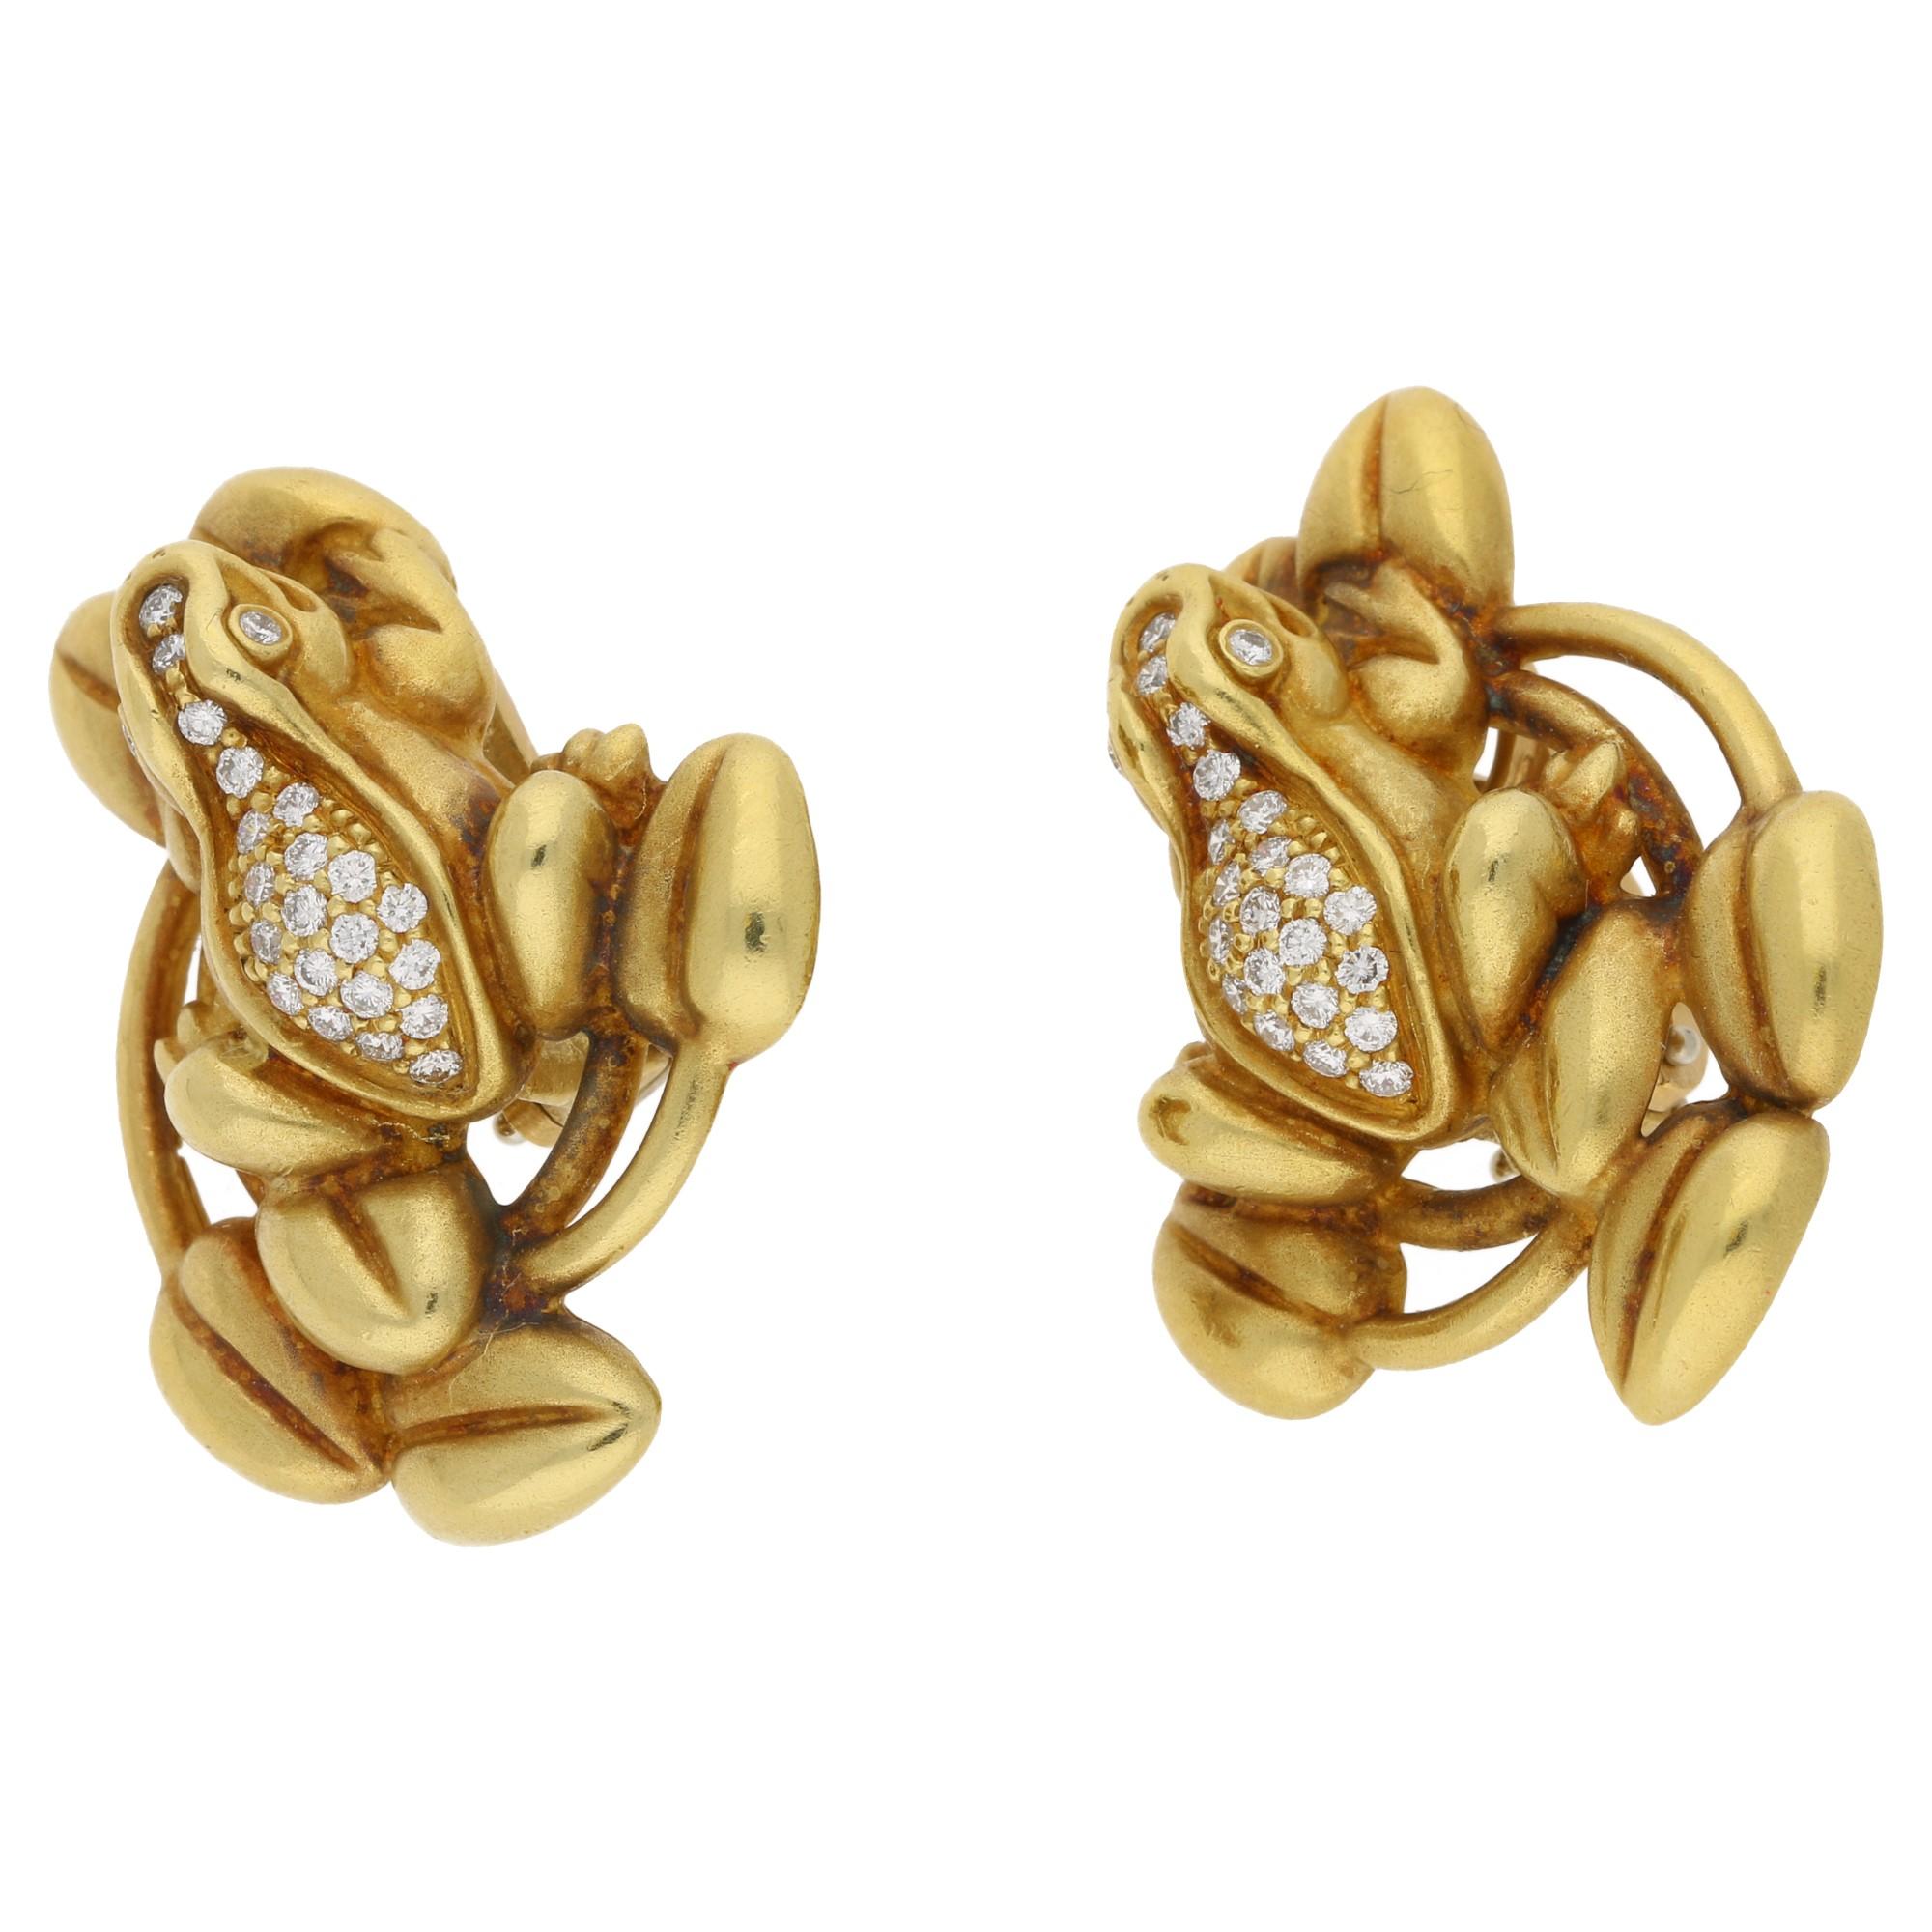 Brilliant Cut B Kieselstein Cord Diamond Frog Gold Earrings